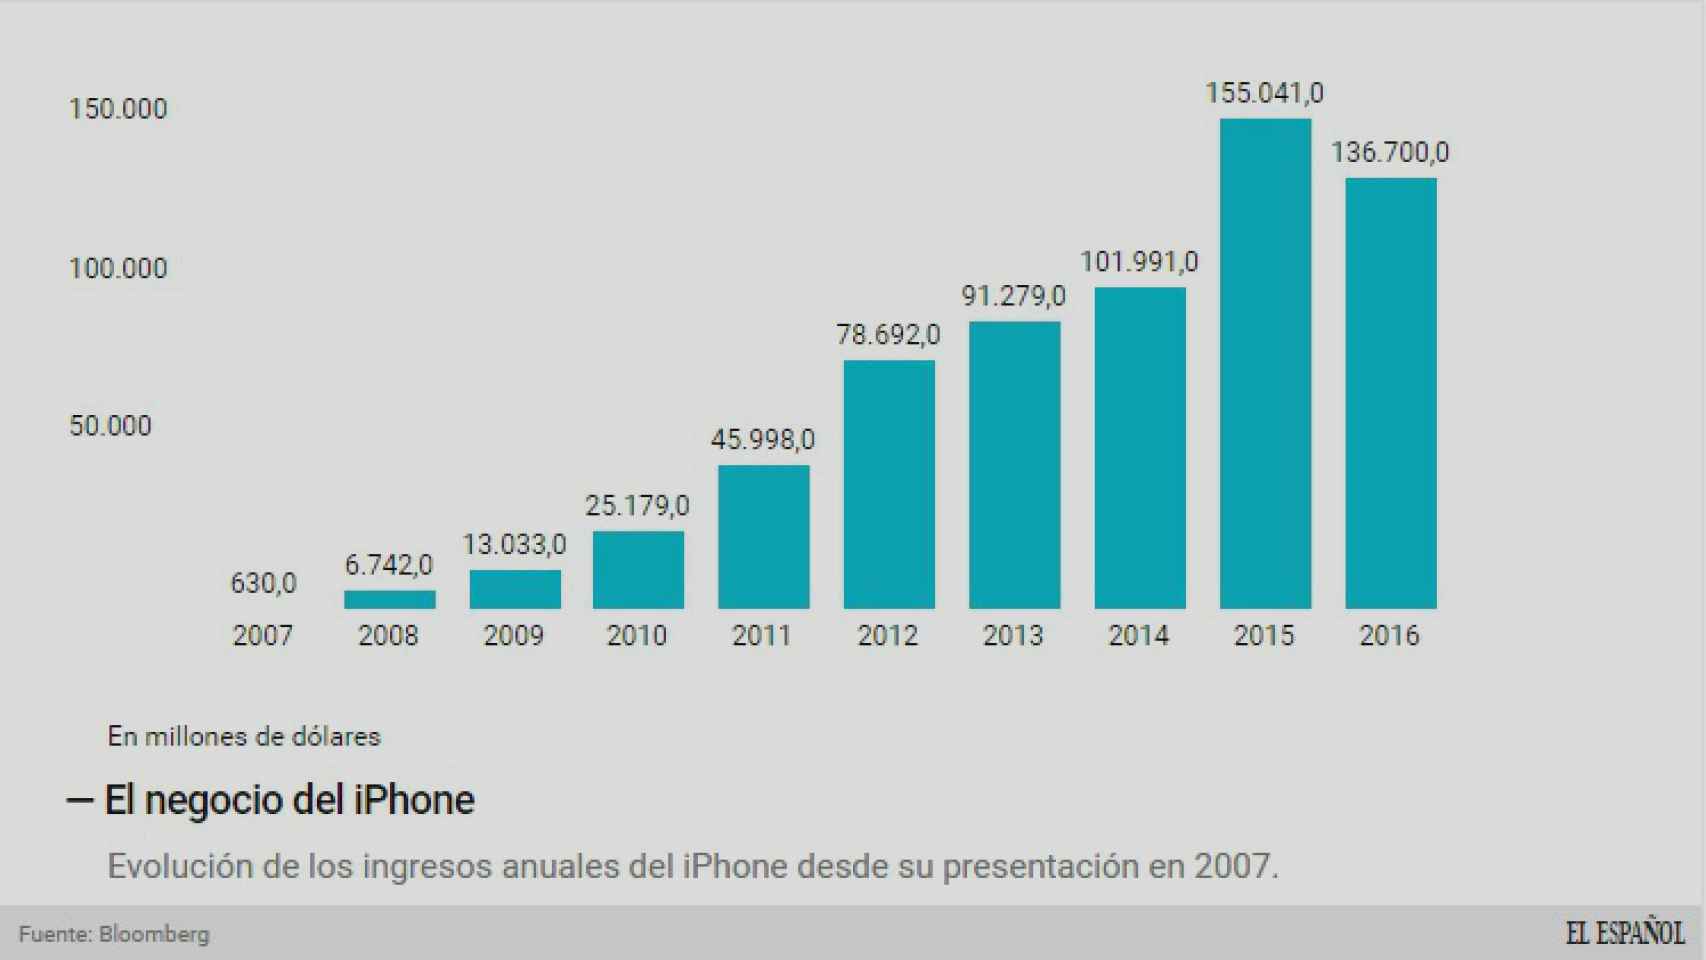 Evolución del negocio del iPhone desde su creación.